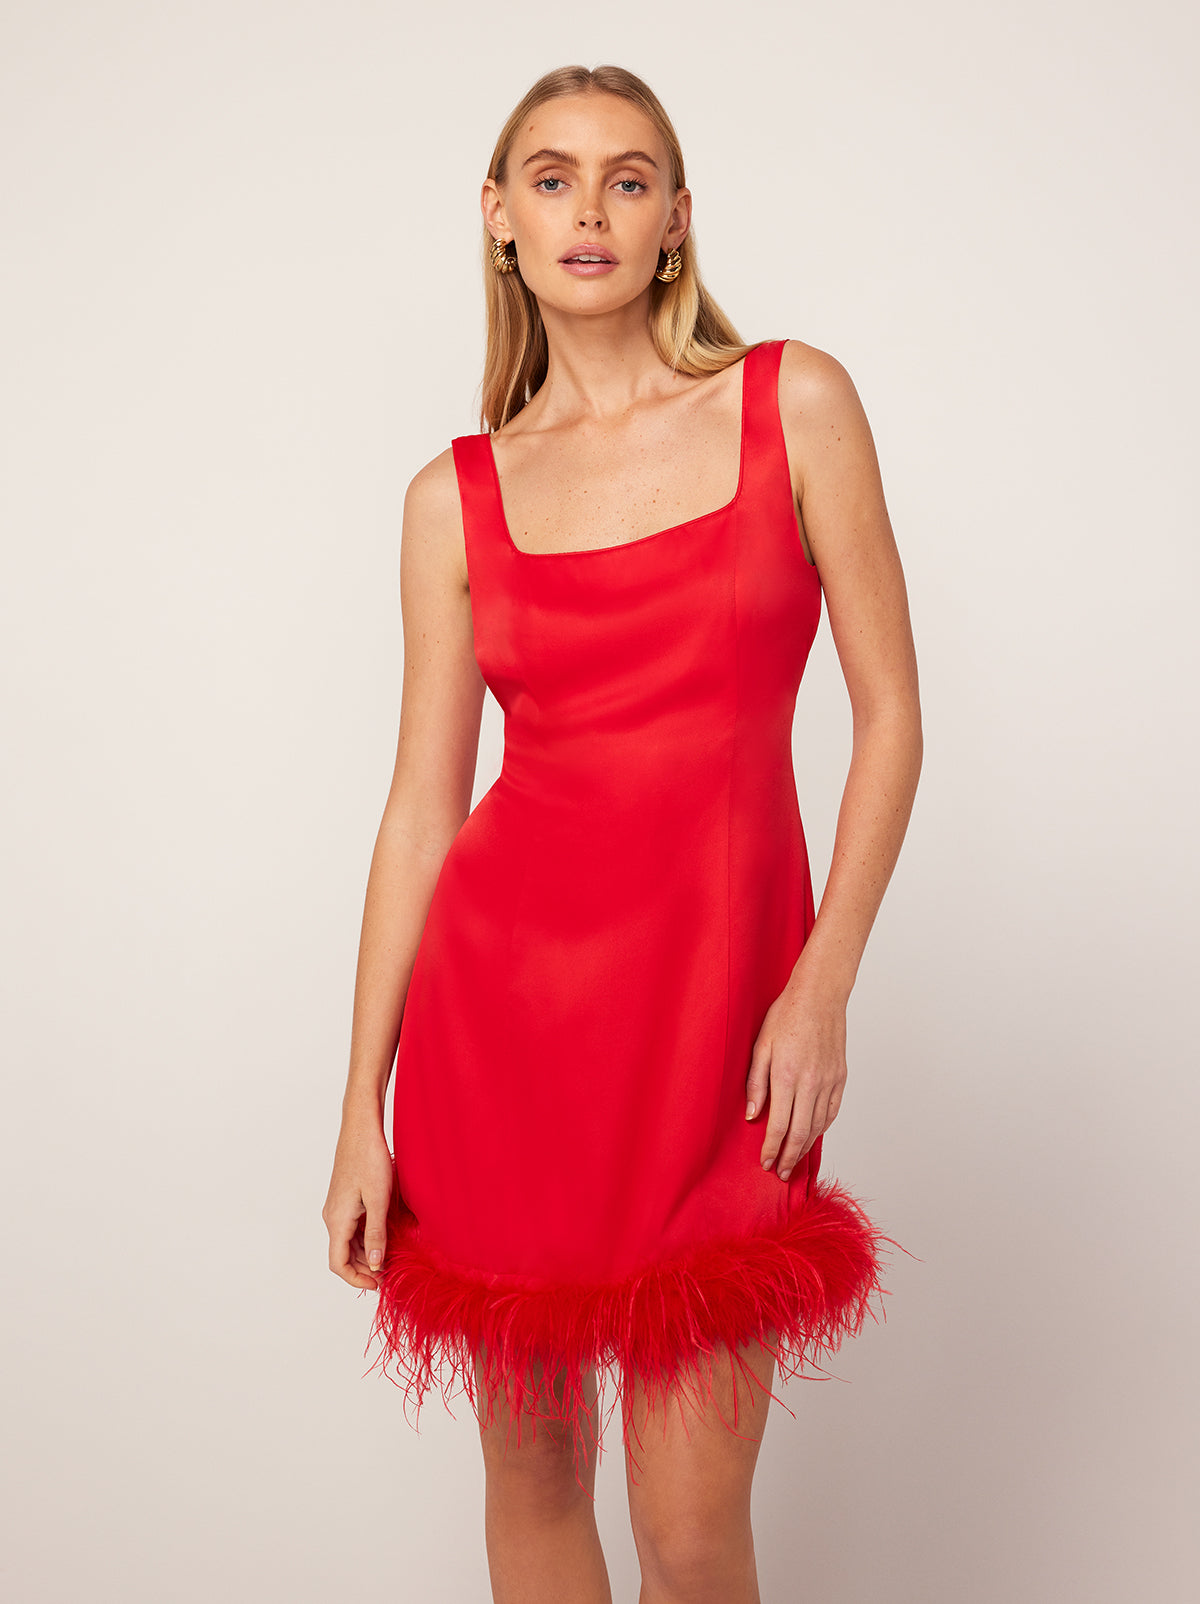 Edina Red Mini Dress